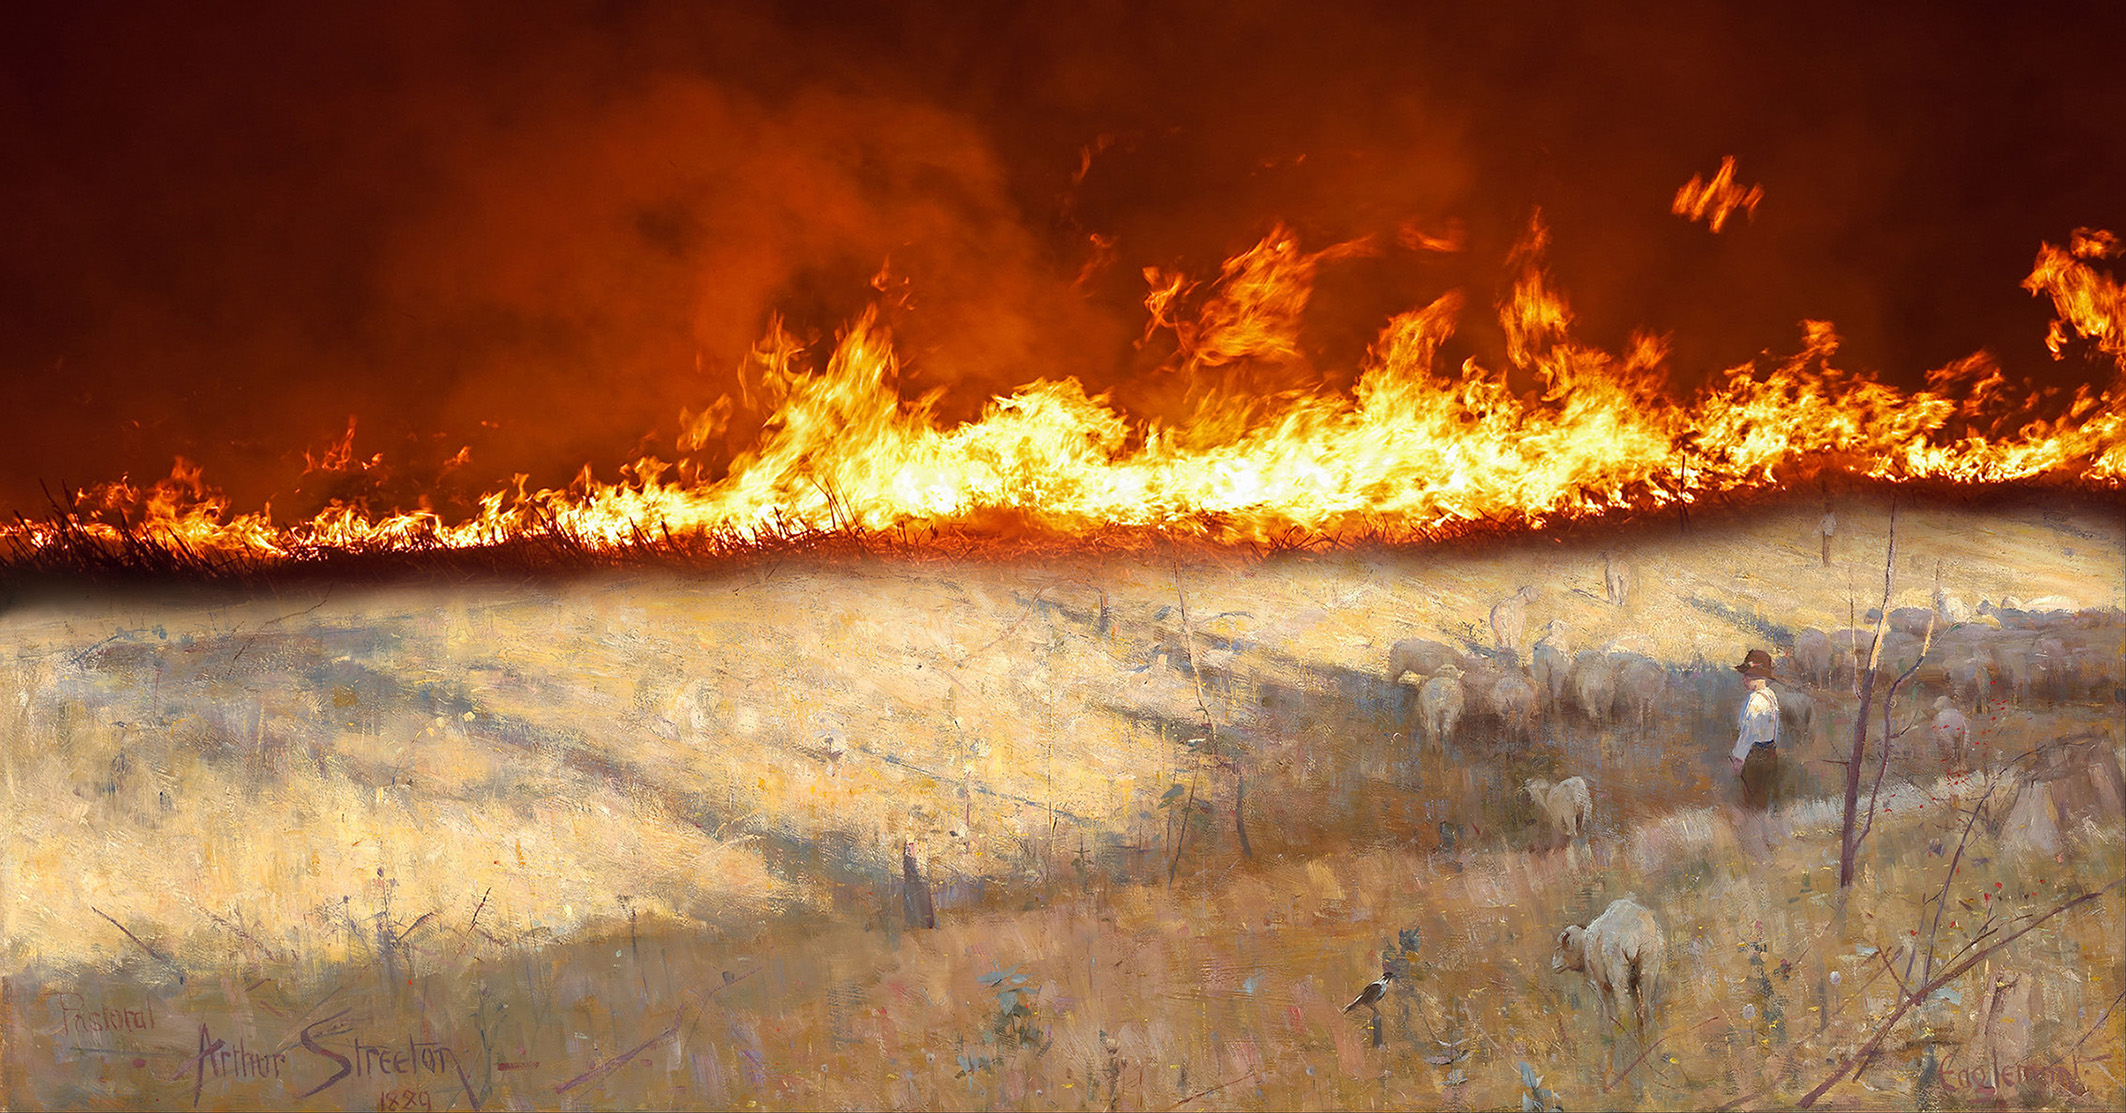 Firestorm: Arthur Streeton. Golden Summer, Eaglemont. 1889 by Pete Ross | Lethbridge Landscape Prize 2021 Finalists | Lethbridge Gallery